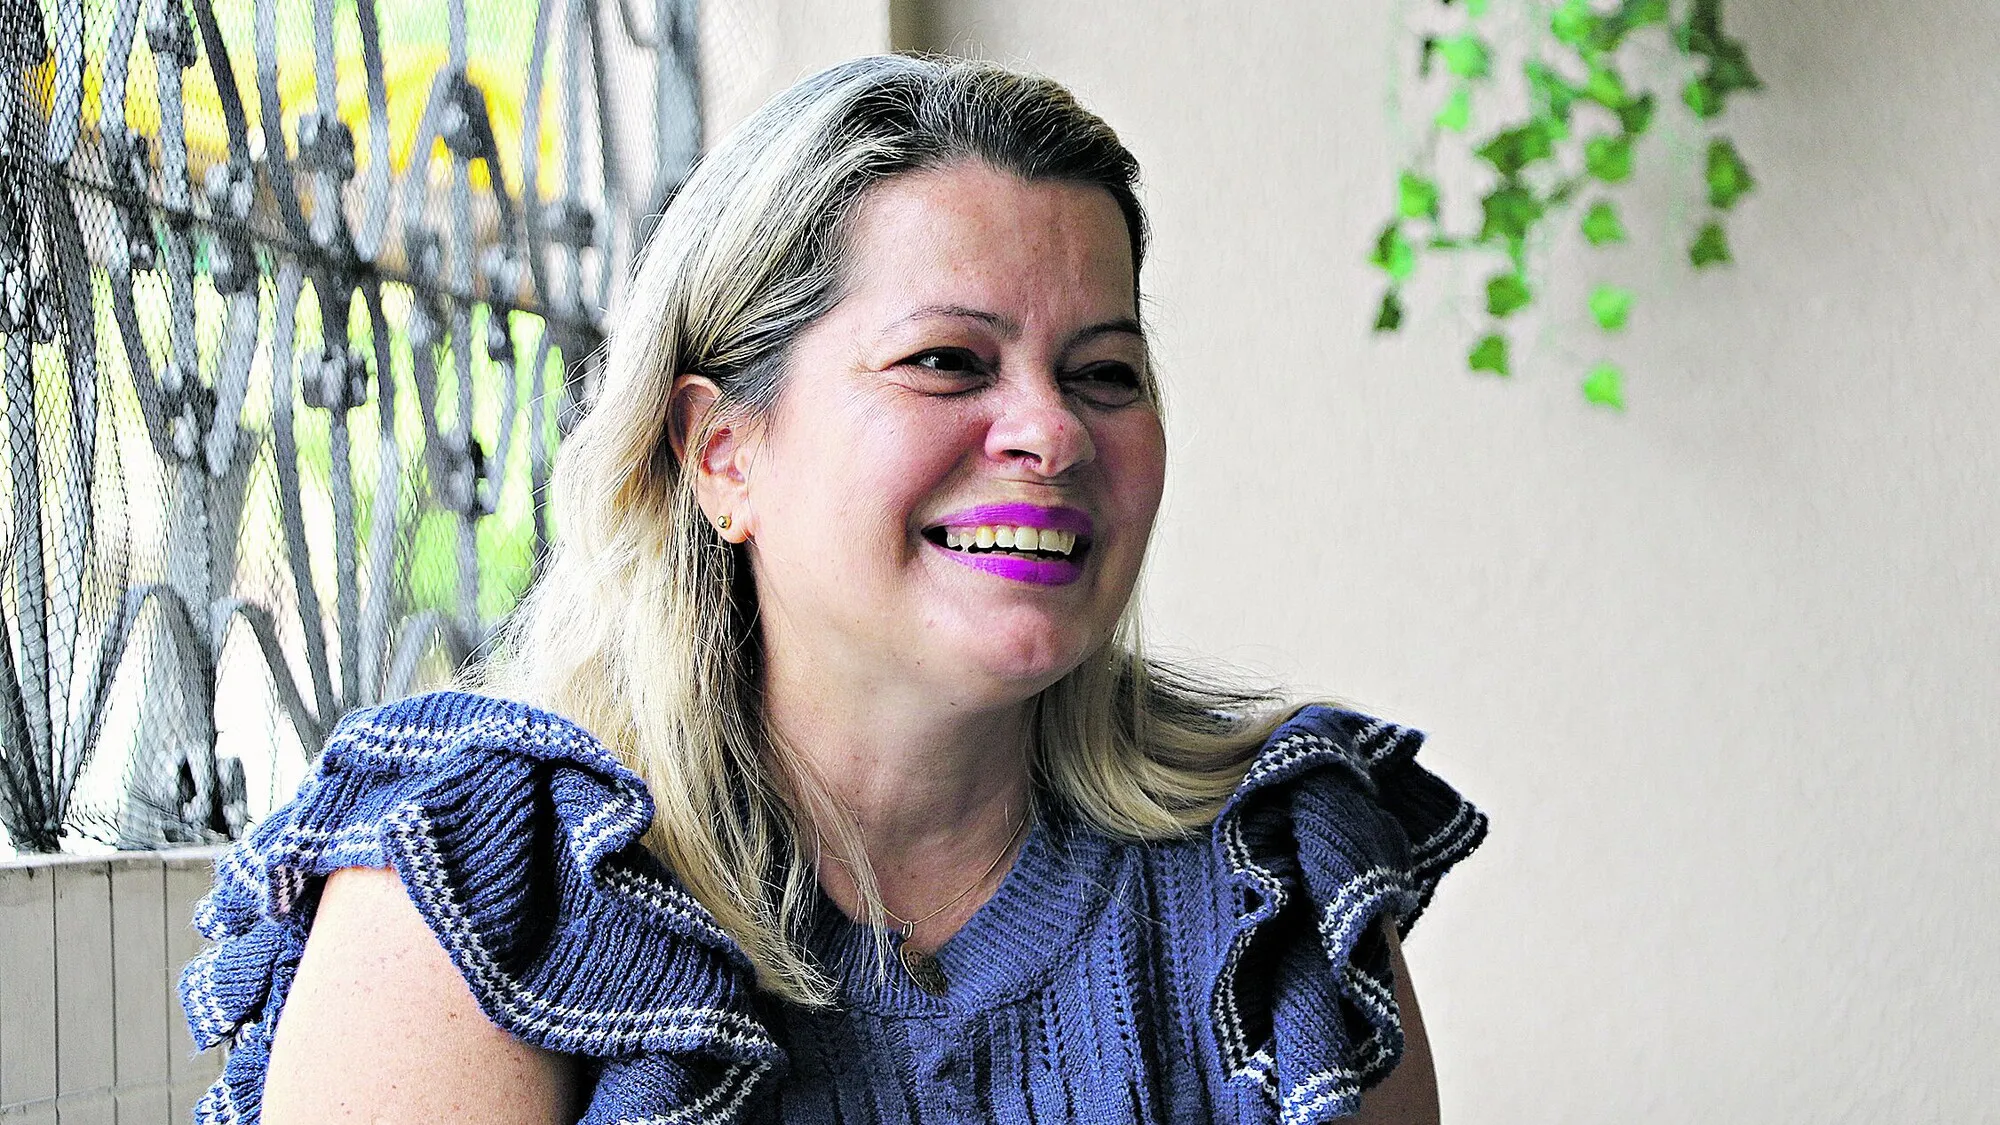 A enfermeira Cláudia Saraiva, de 51 anos, também nasceu no dia 29 de fevereiro, mas de 1972.